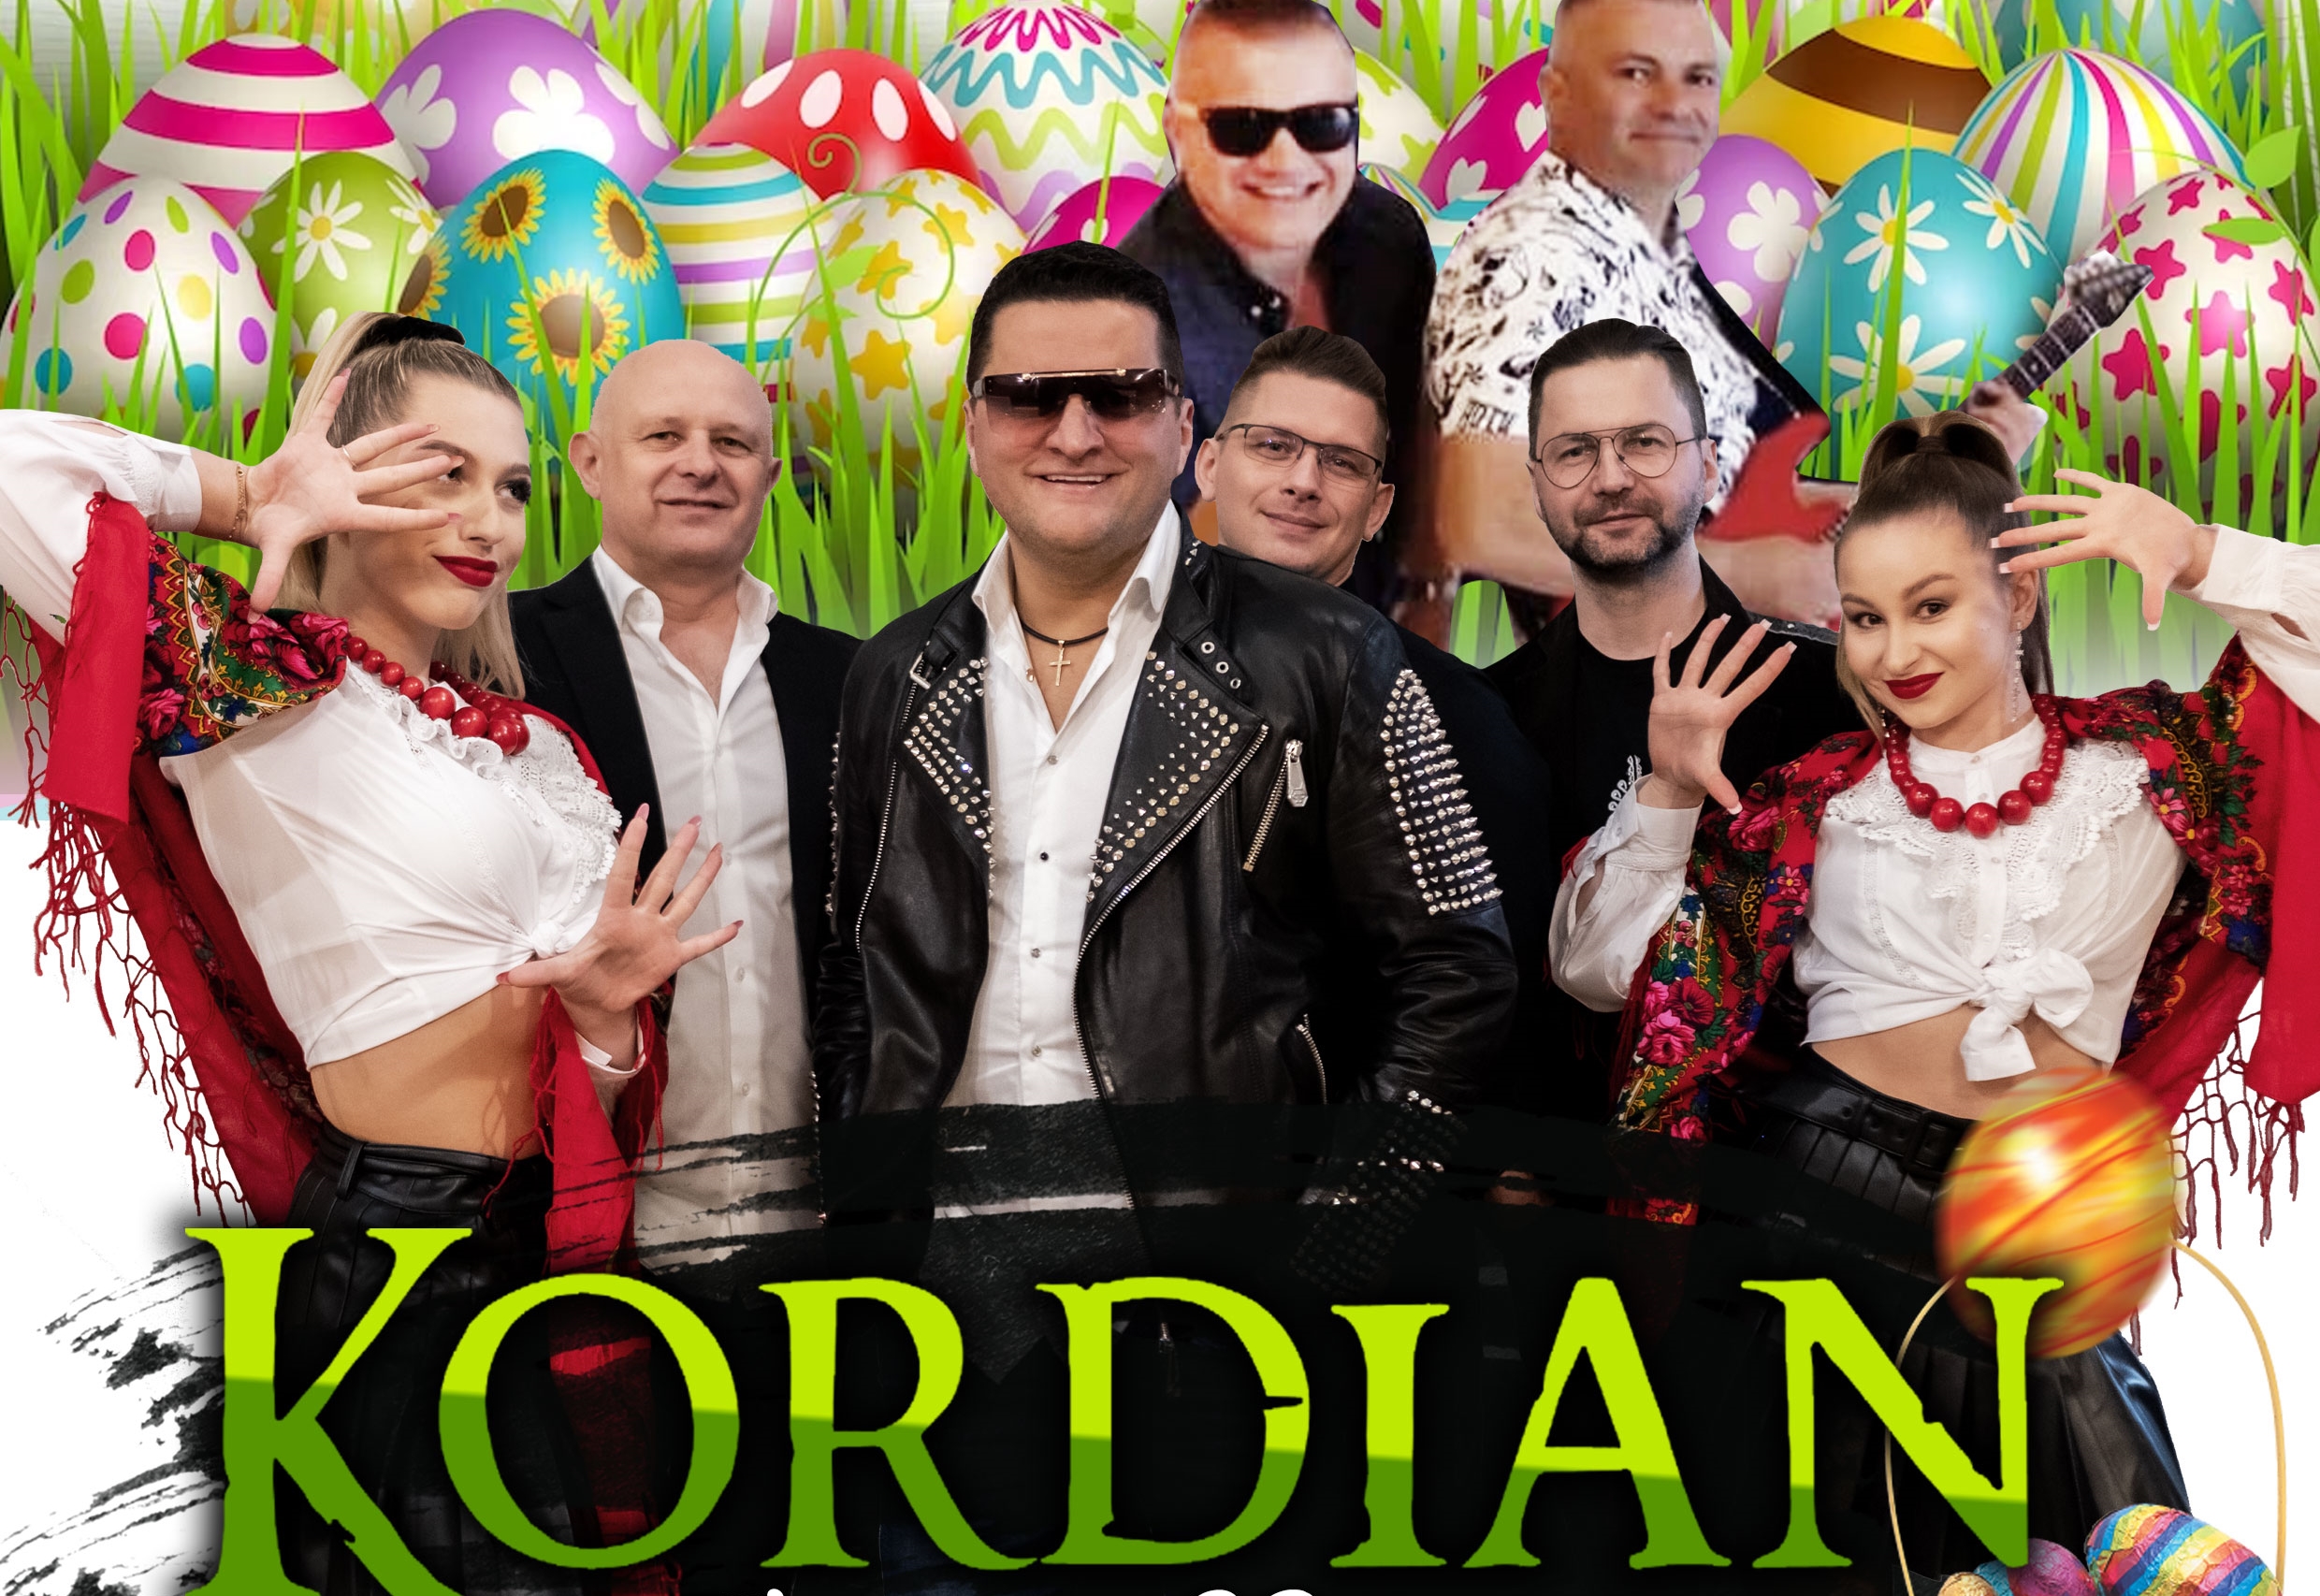 JUŻ dziś 9 kwietnia - Kordian na żywo w klubie Milano Baćkowice - epicka impreza dla fanów disco polo!